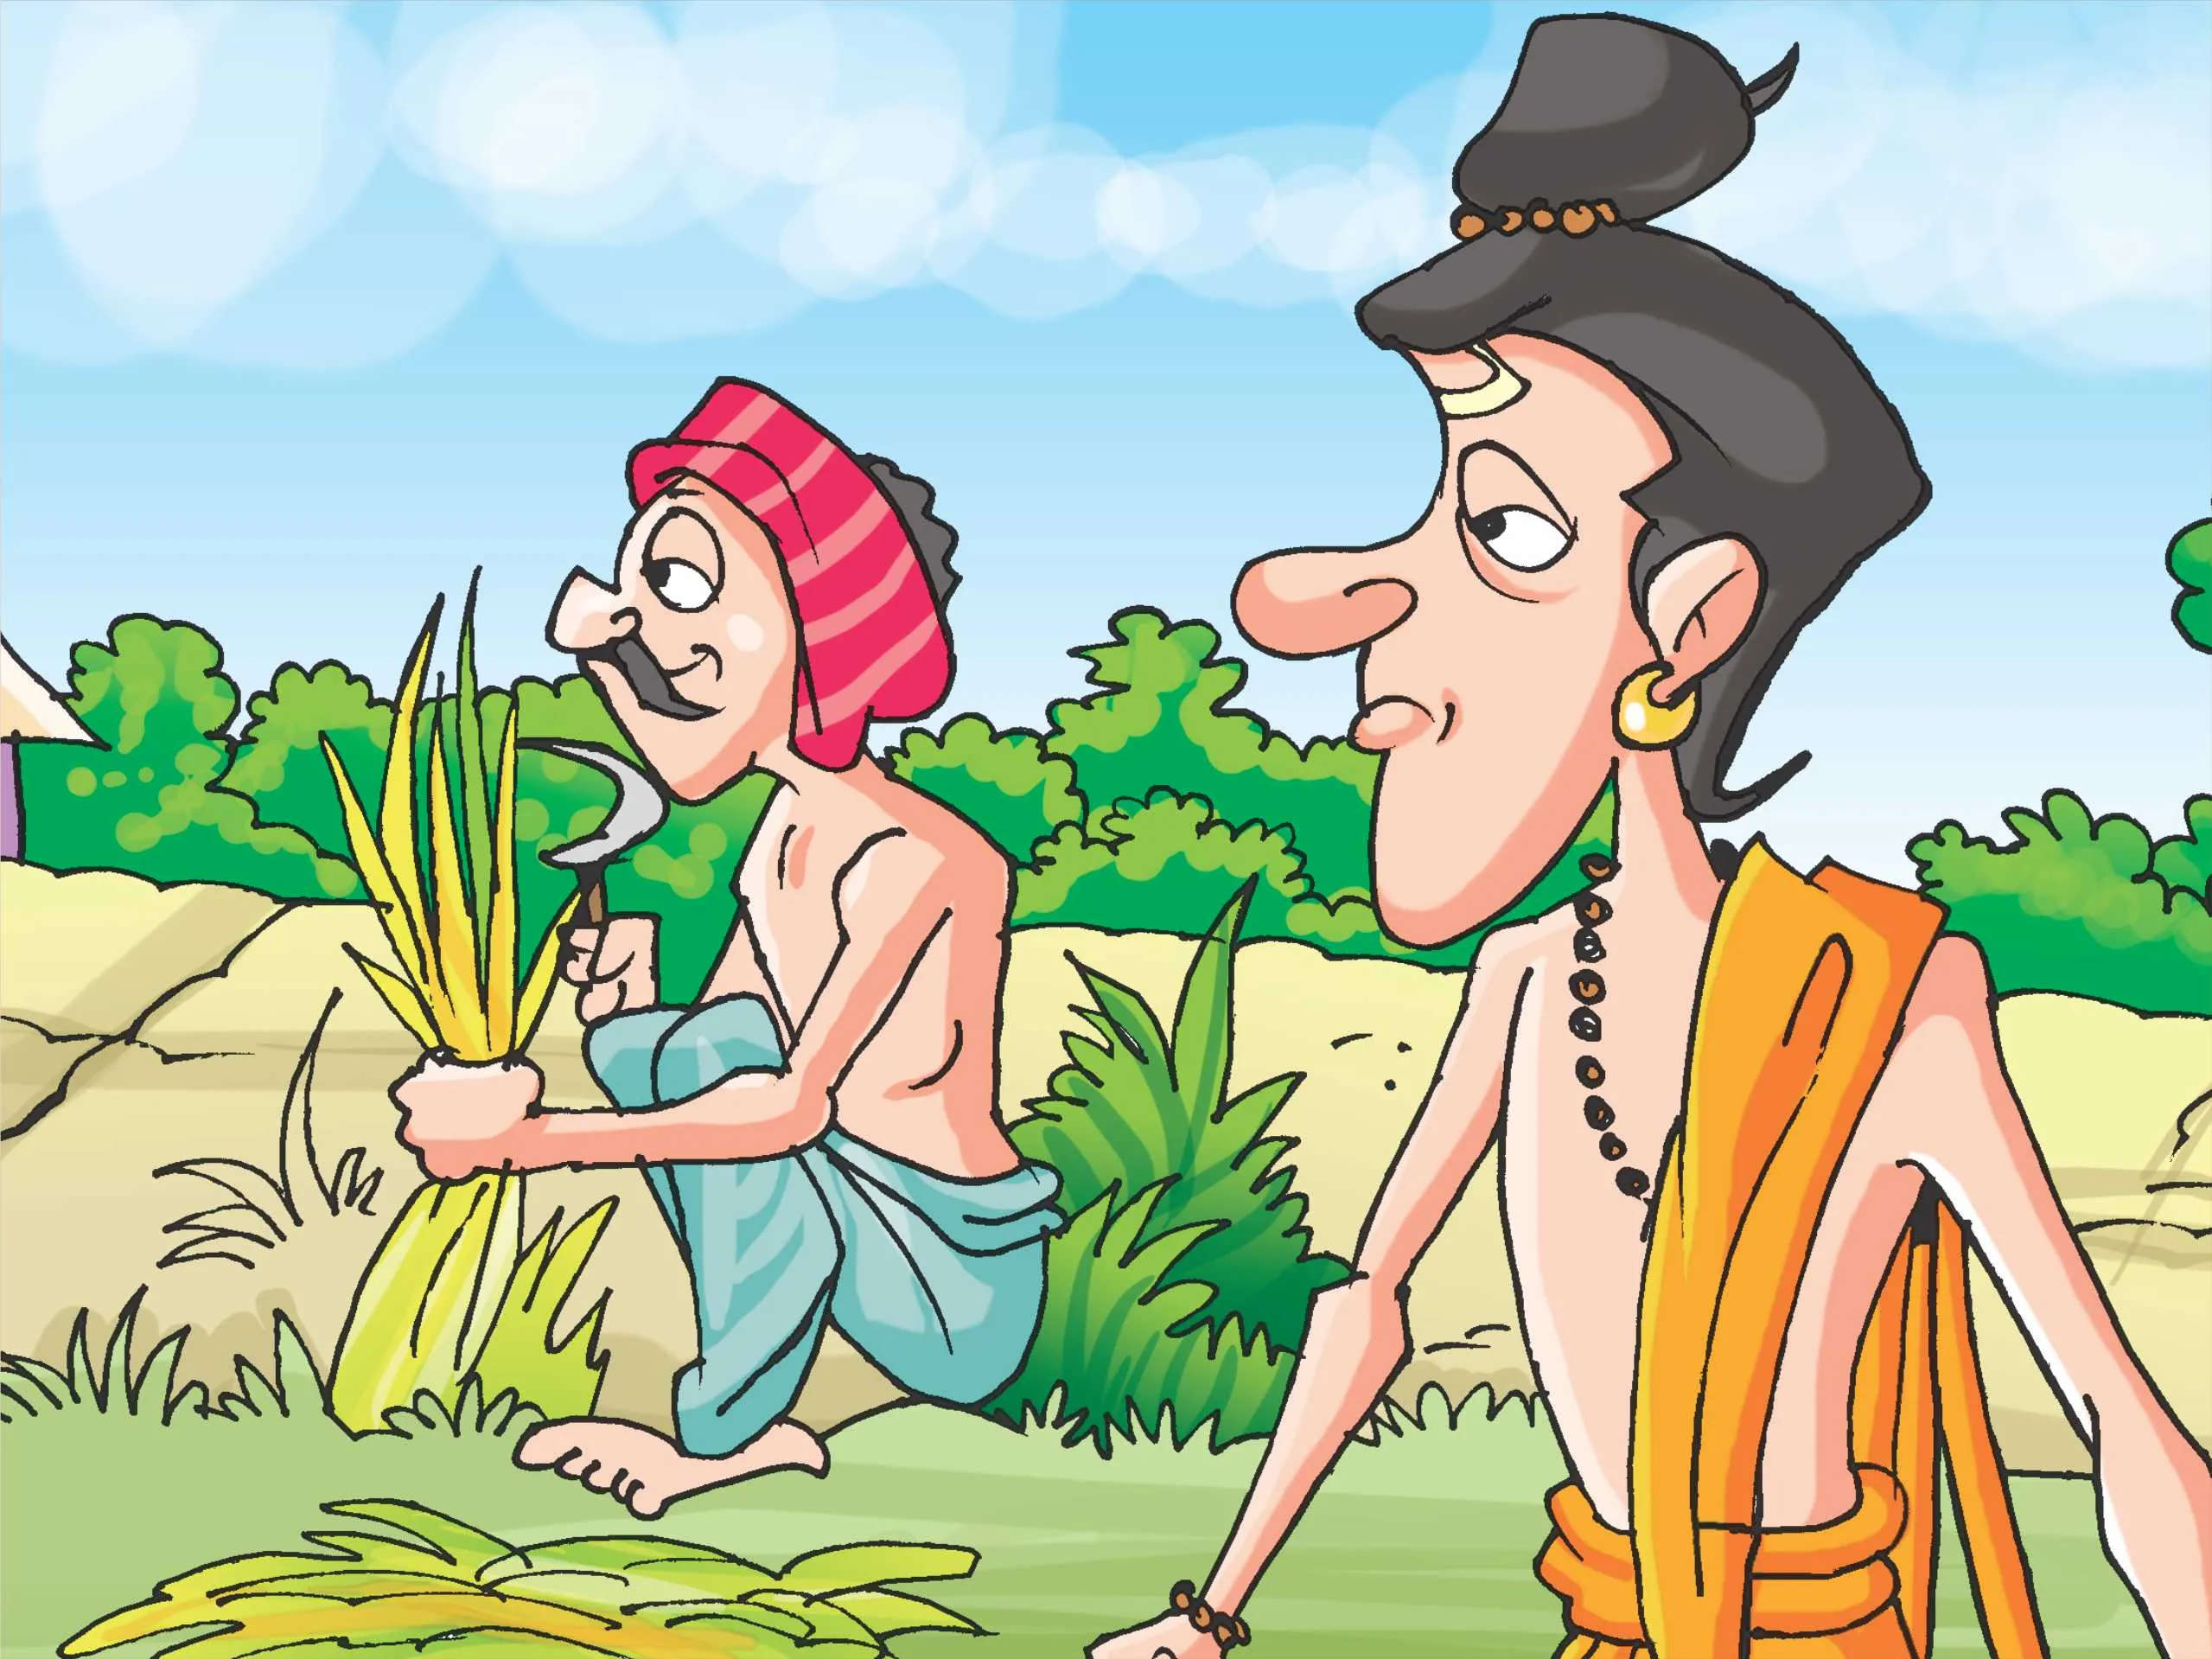 Saint and Farmer Cartoon Image